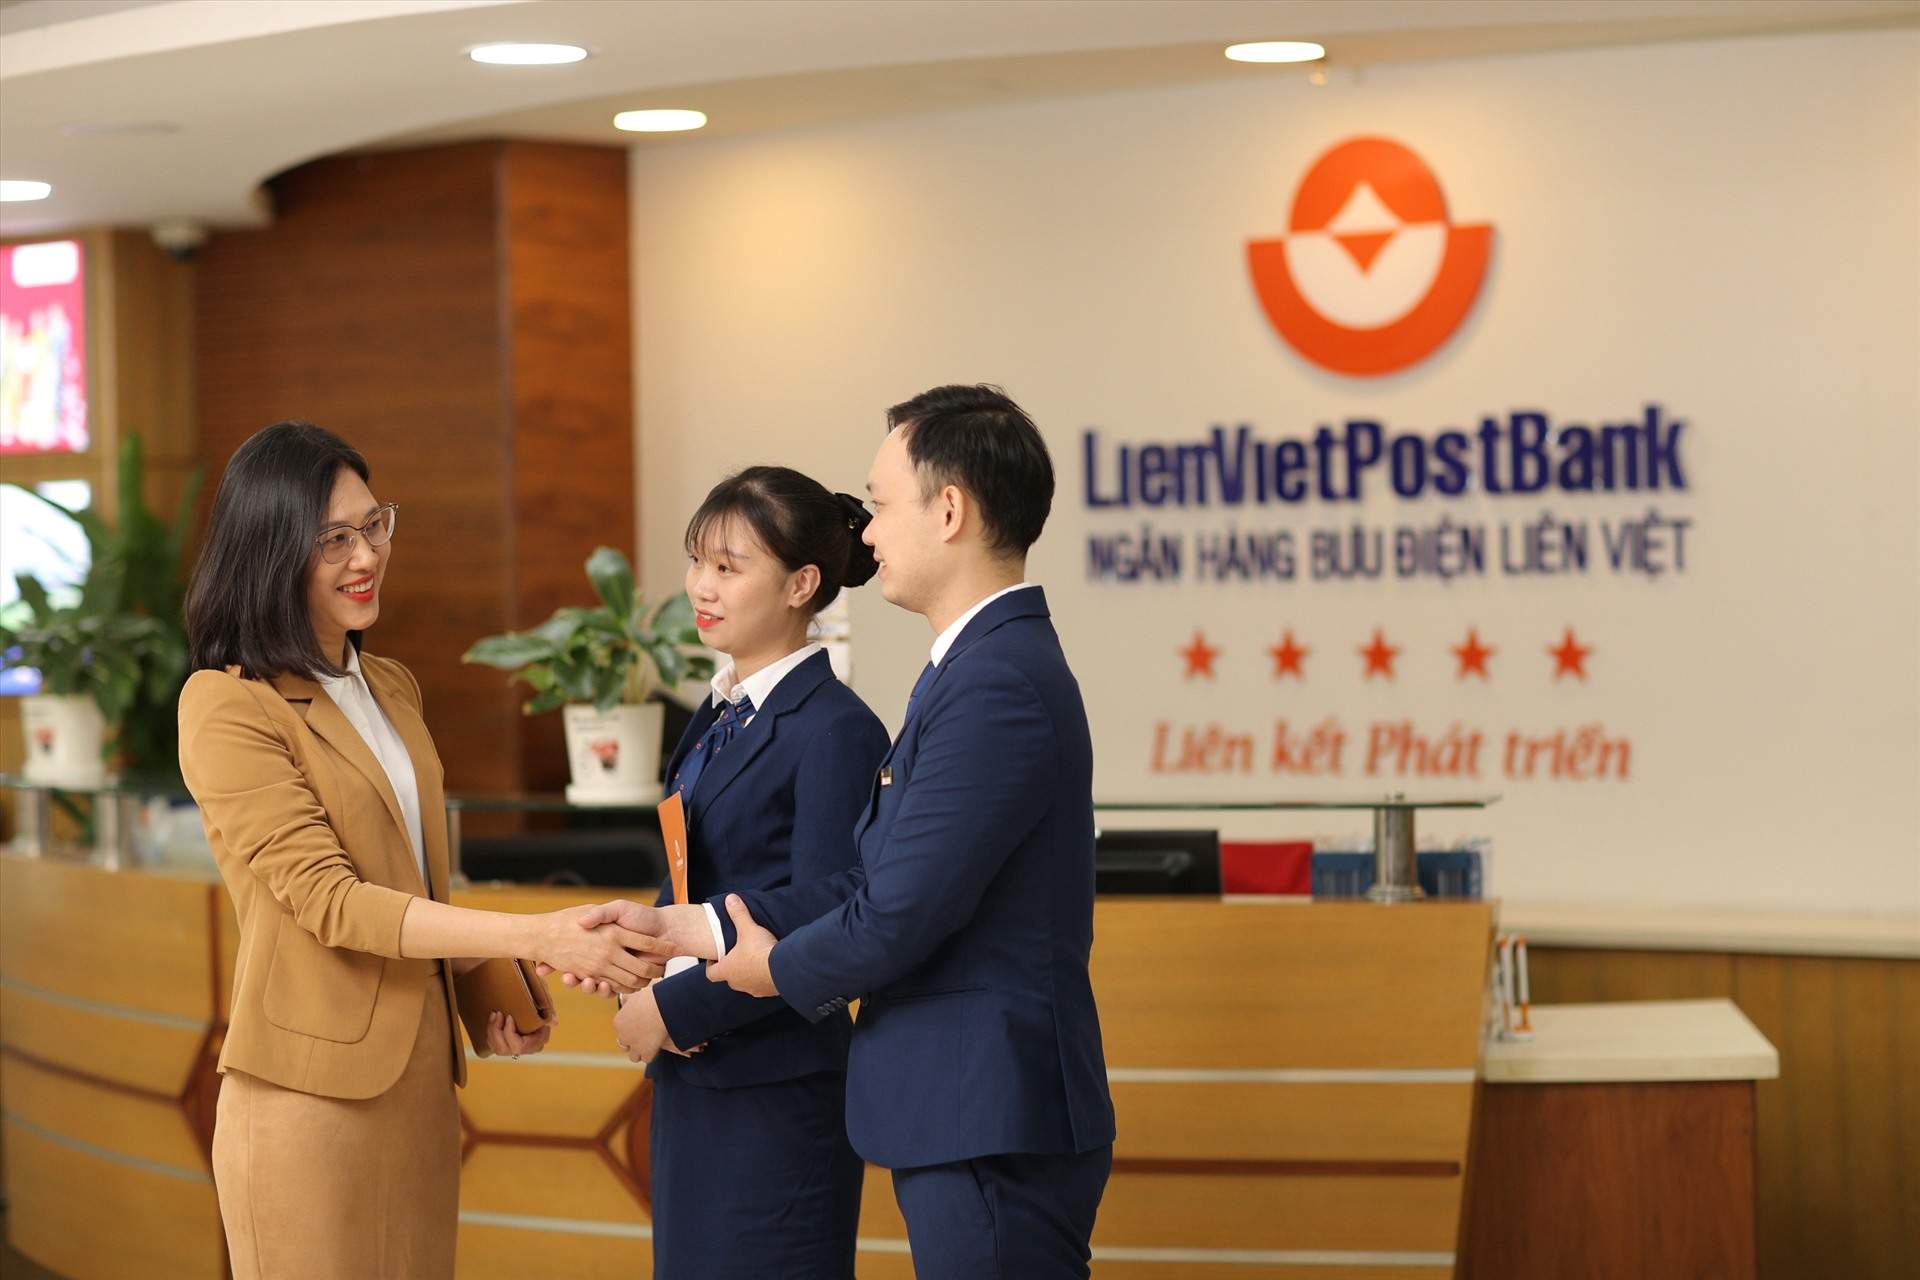 Các chi nhánh ngân hàng LienVietPostBank làm việc thứ 7